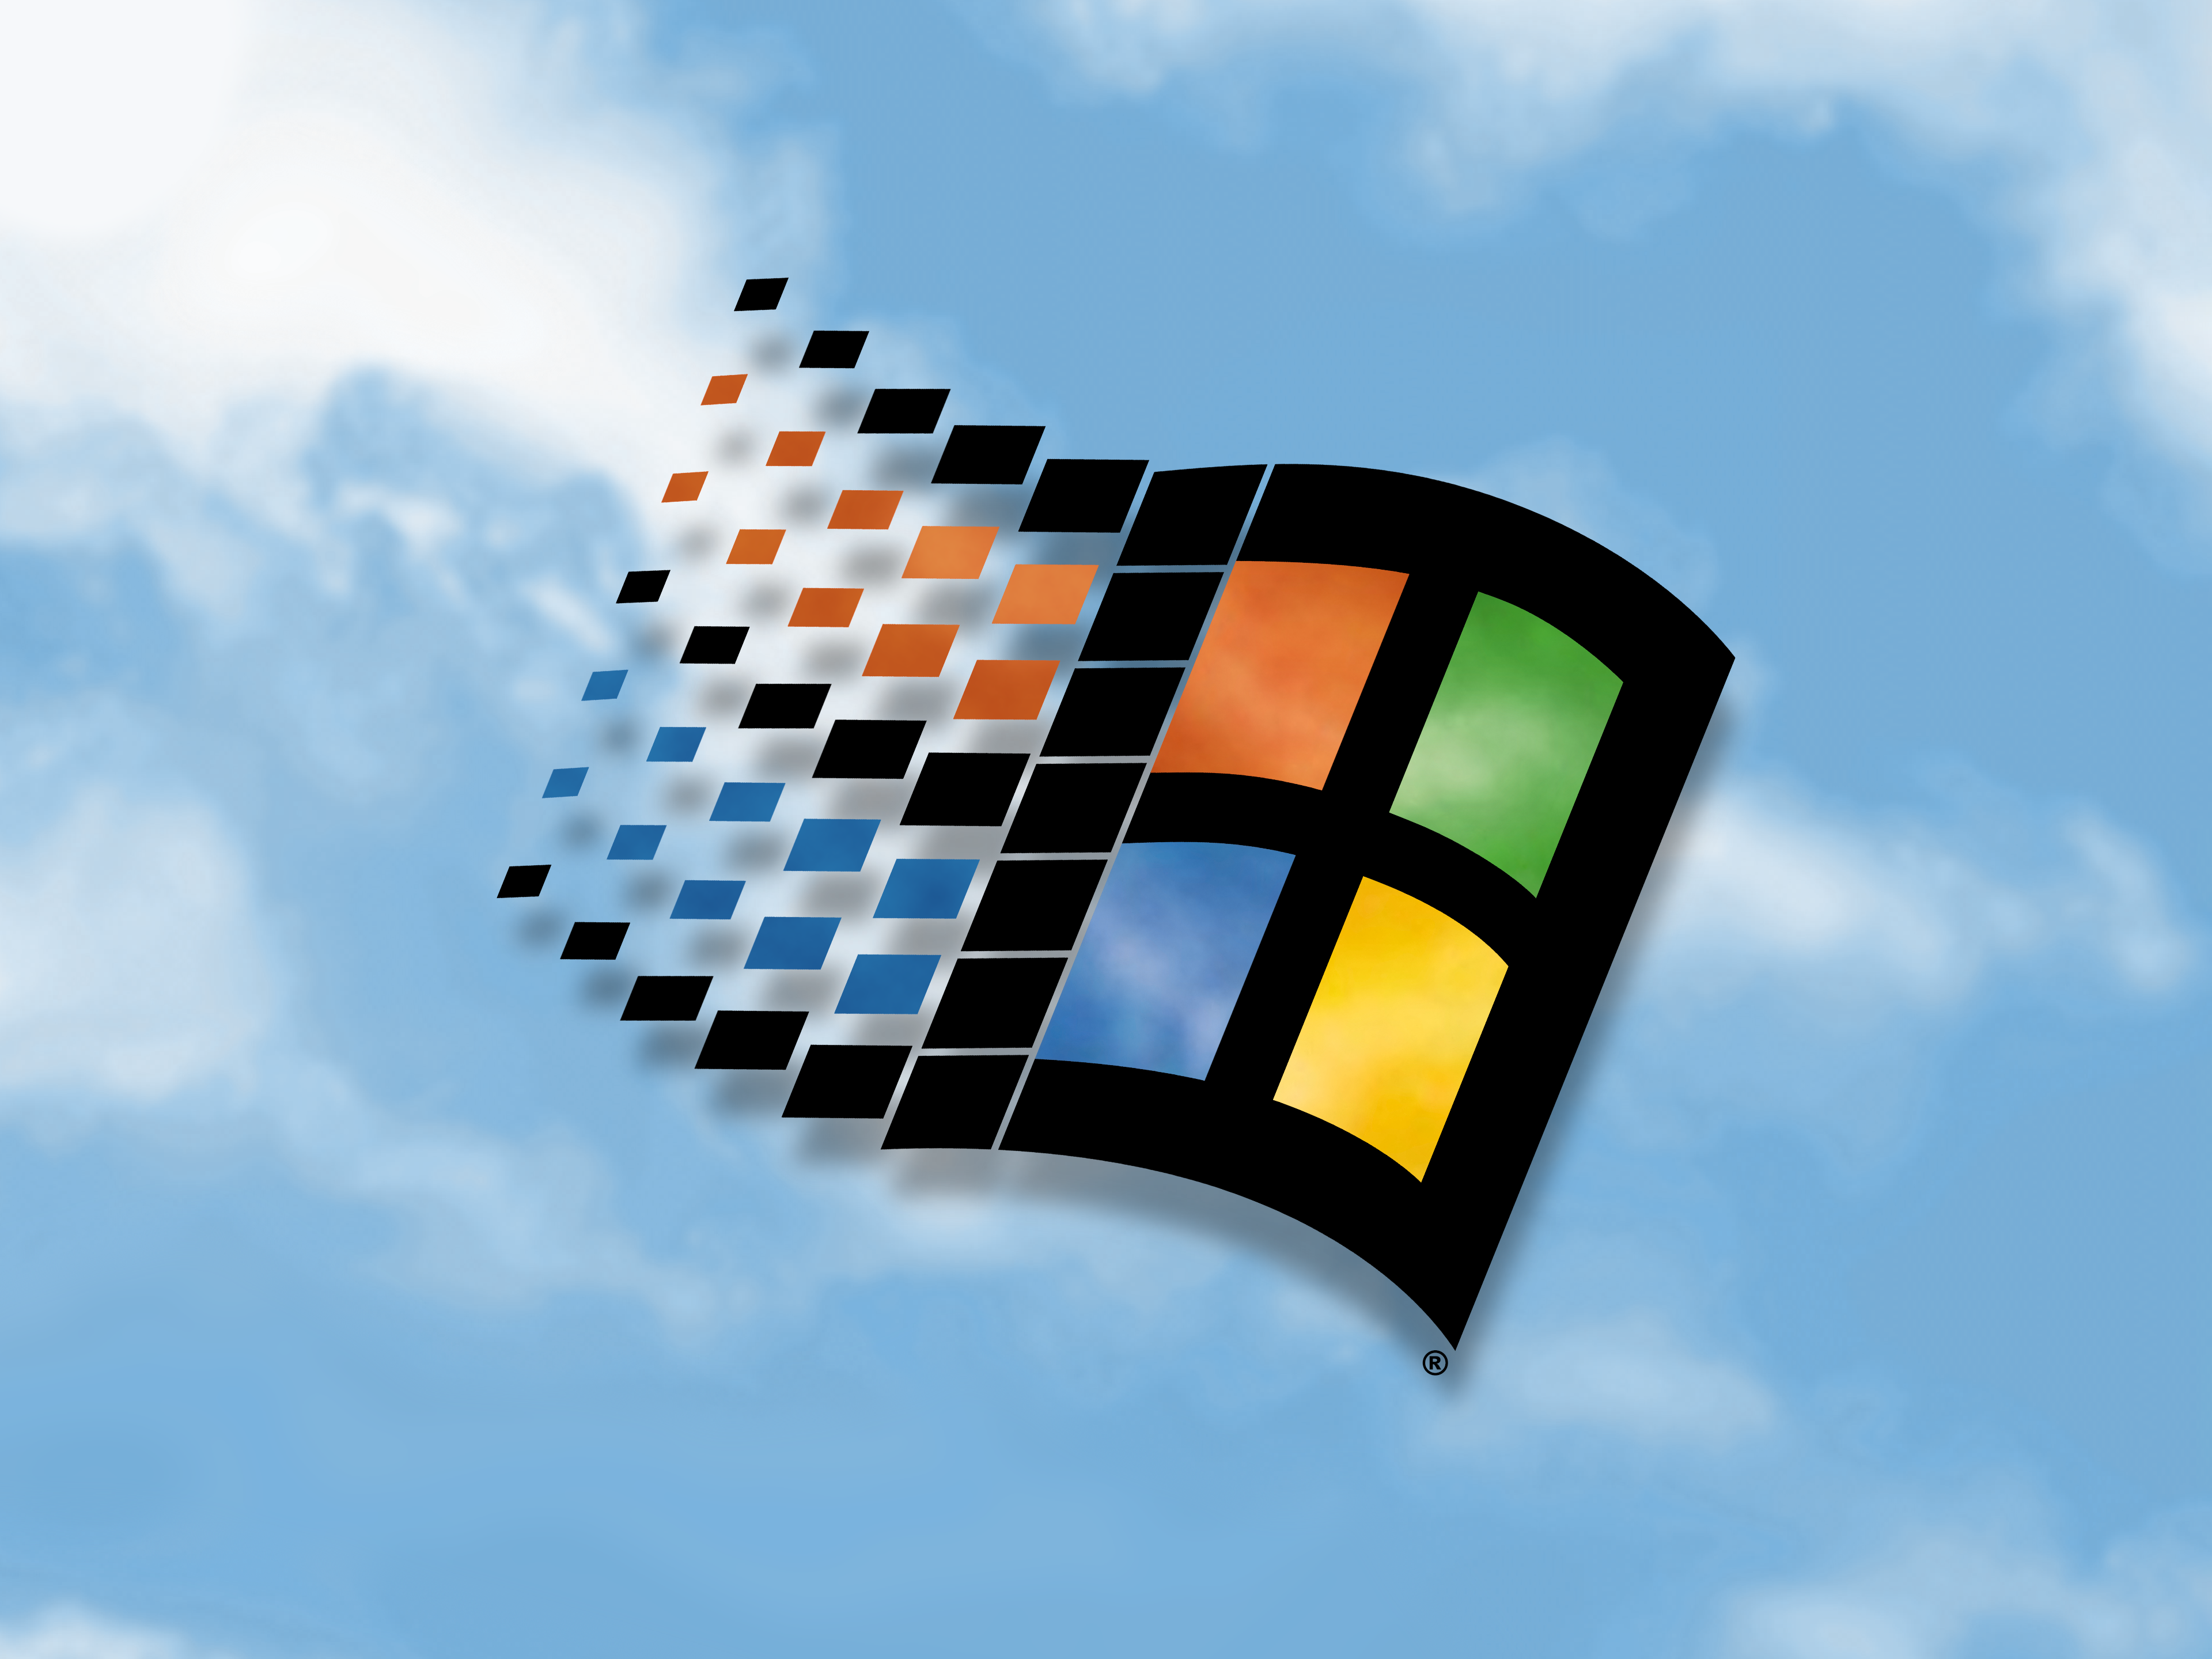 Hình nền Windows 98 là hình ảnh cổ điển đầy quyến rũ và đặc biệt. Để thưởng thức bức ảnh này, hãy thả mình vào không khí của những năm 90 đầy kỷ niệm.